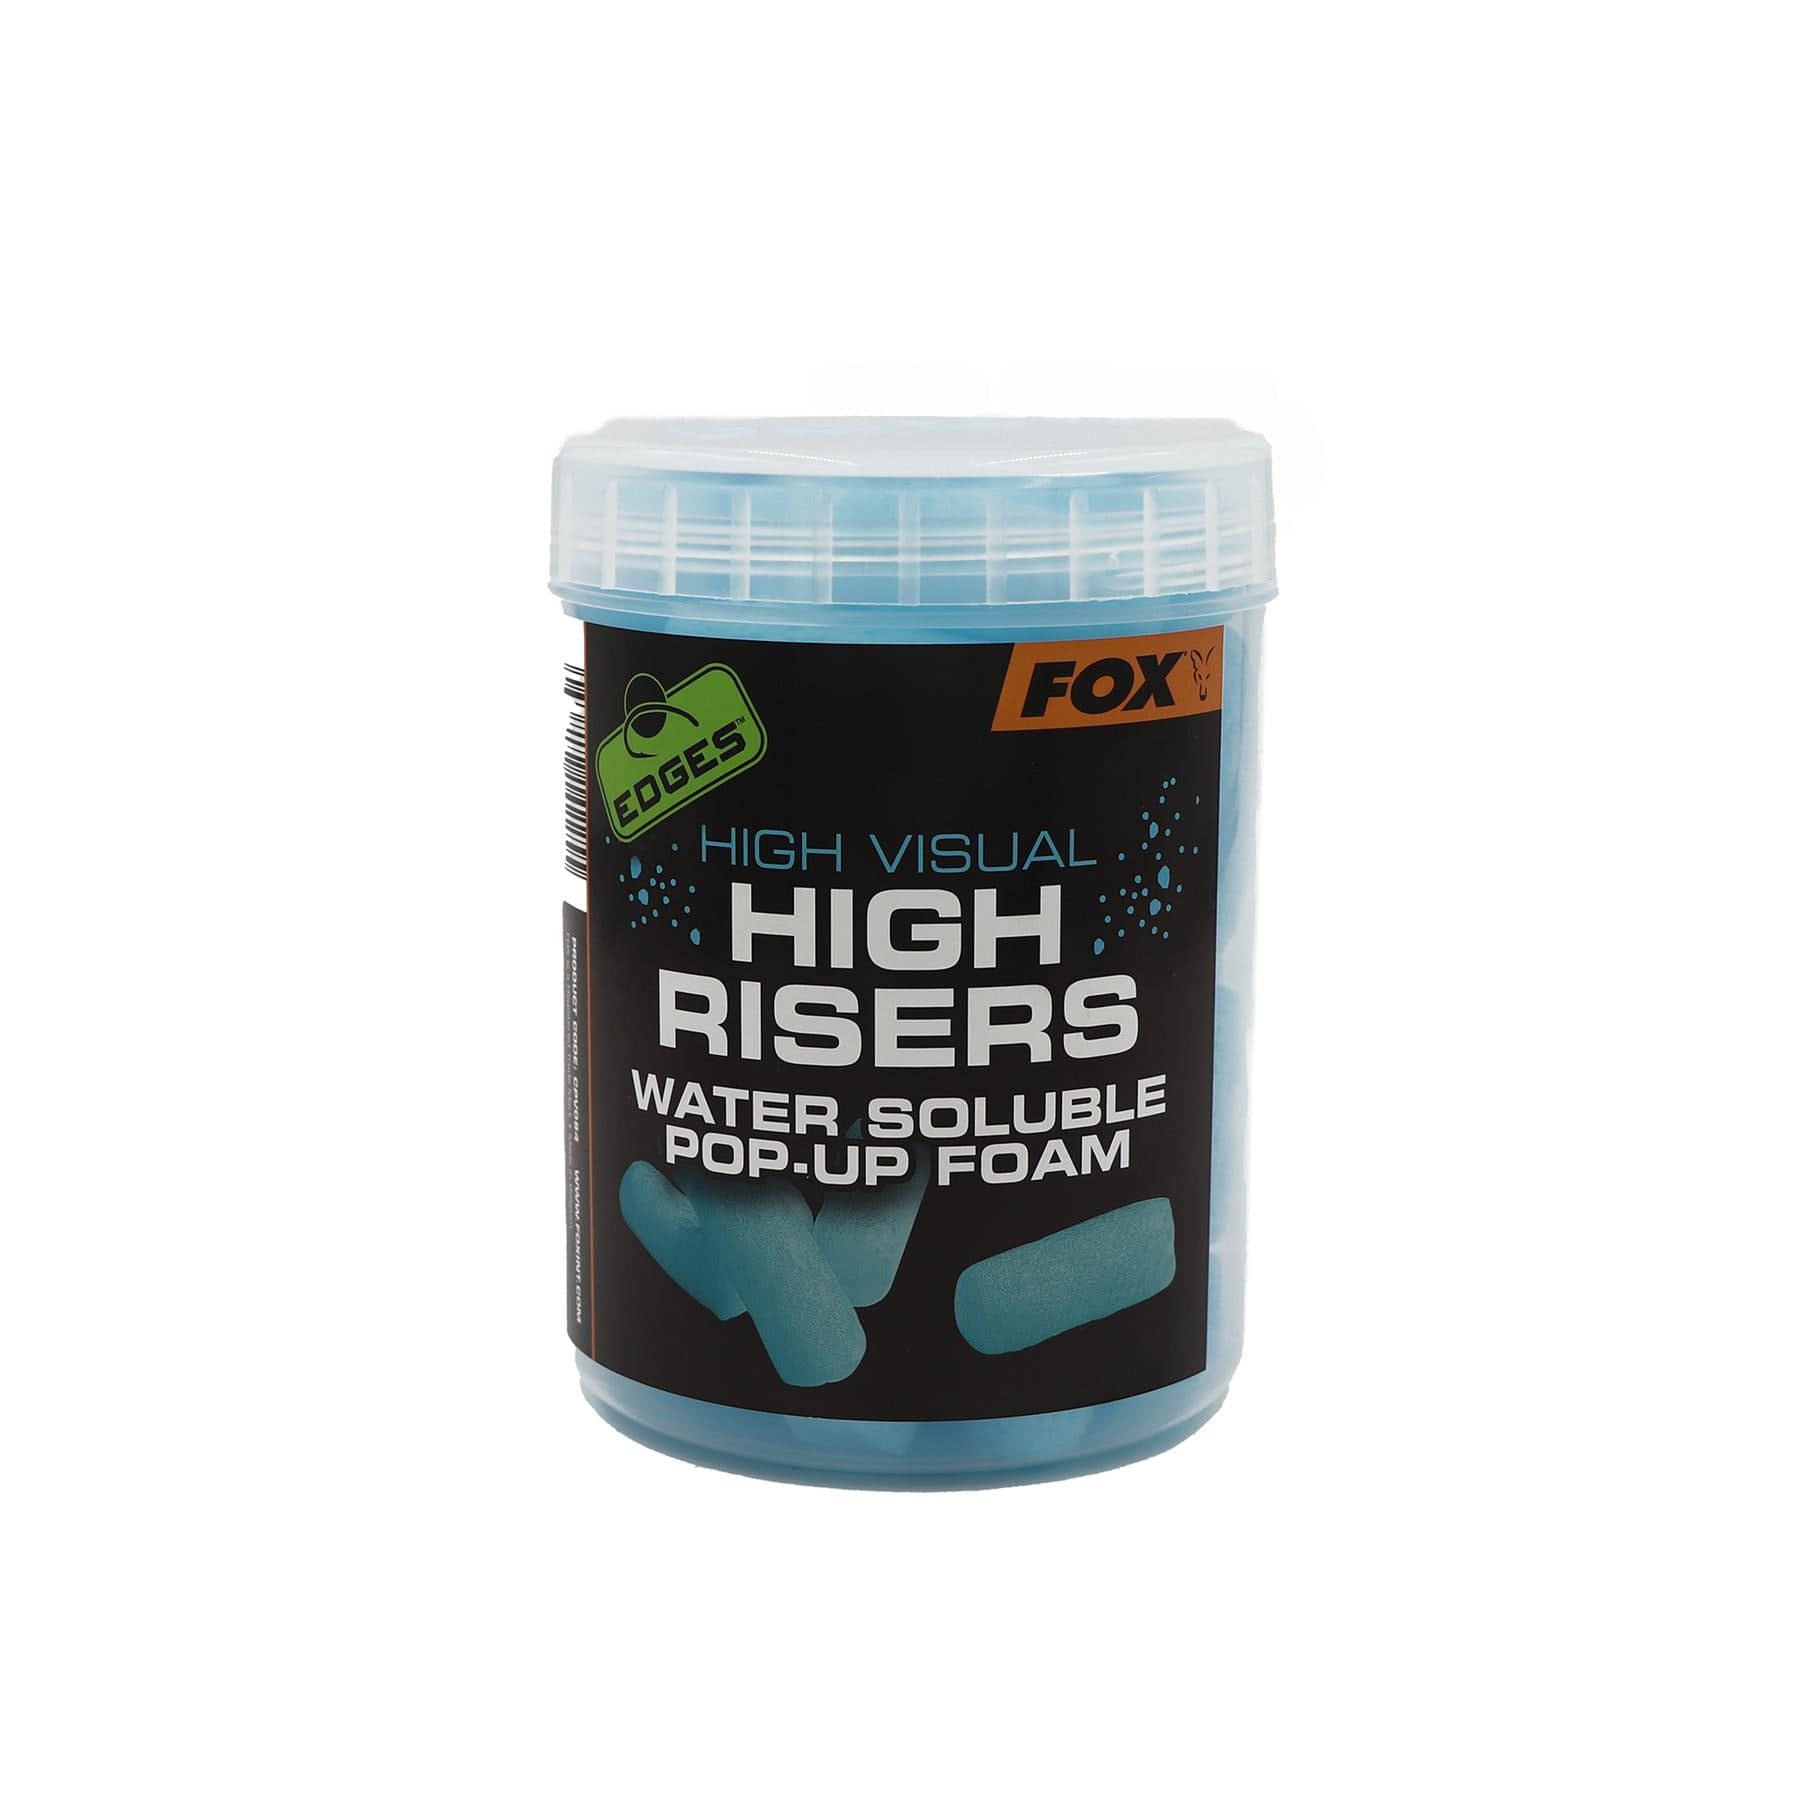 FOX High Visual High Risers - Pop-up Foam Tub.